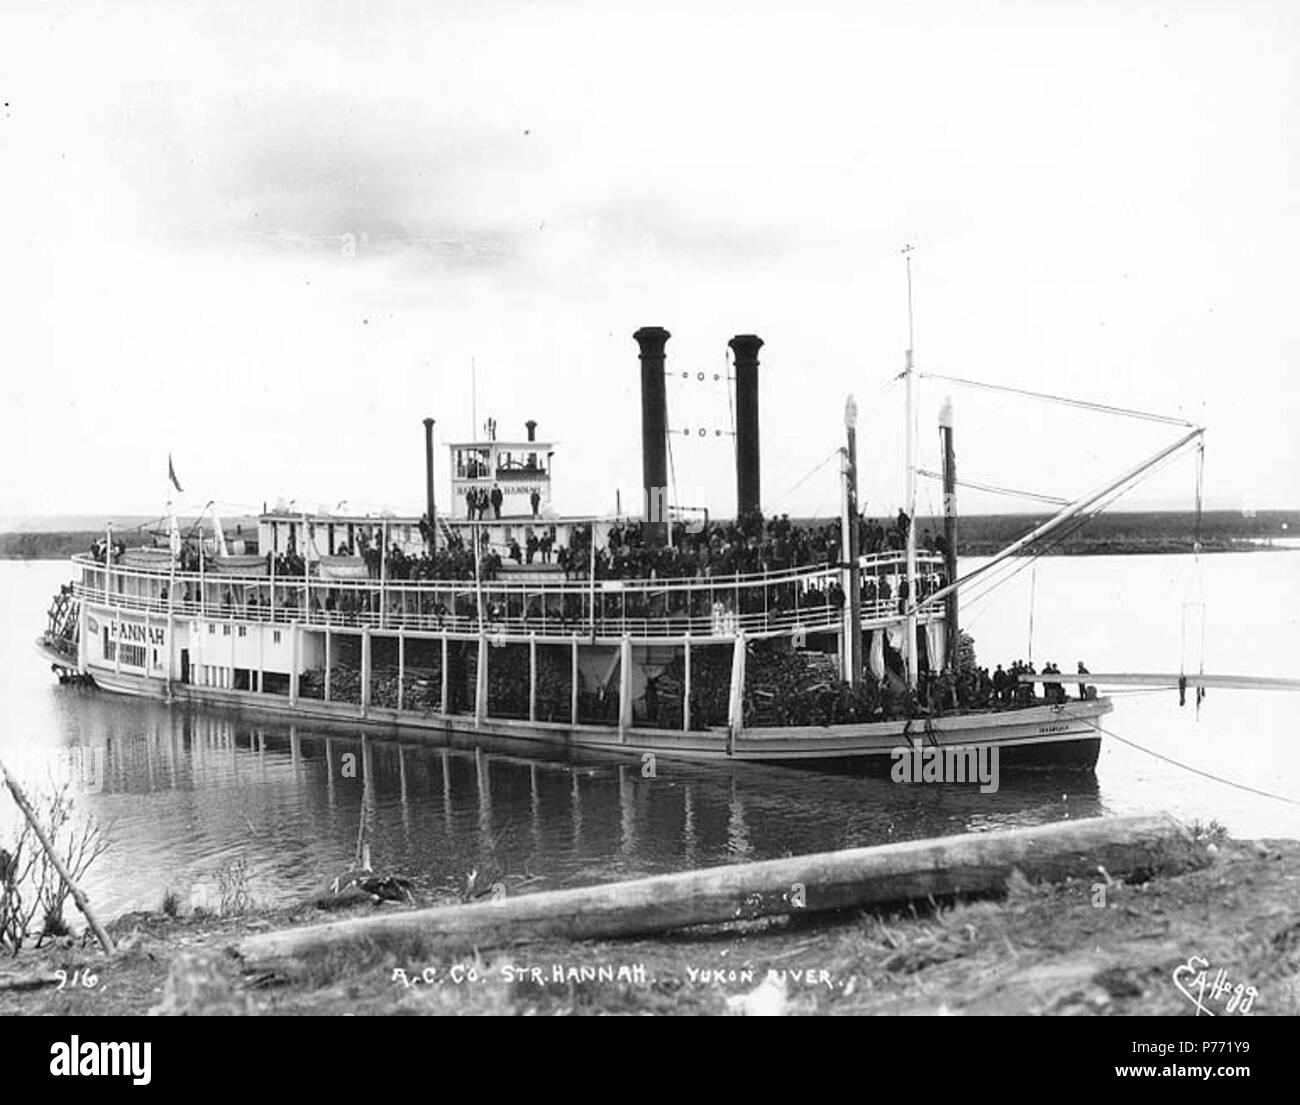 . Anglais : Alaska Commercial Company steamboat HANNAH liés à un atterrissage sur le fleuve Yukon, Territoire du Yukon, ca. 1898. Anglais : Légende sur l'image : 'A.C. Co., Hannah. Yukon River' image originale à Hegg Album 17, page 39. Sujets (LCTGM) : roues arrière--Yukon ; des rivières--Yukon Sujets (LCSH) : Hannah (Stern wheeler) ; Yukon River (Yukon et l'Alaska) . vers 1898 1 Alaska Commercial steamboat Co HANNAH liés à un atterrissage sur le fleuve Yukon, Territoire du Yukon, ca 1898 (HEGG 588) Banque D'Images